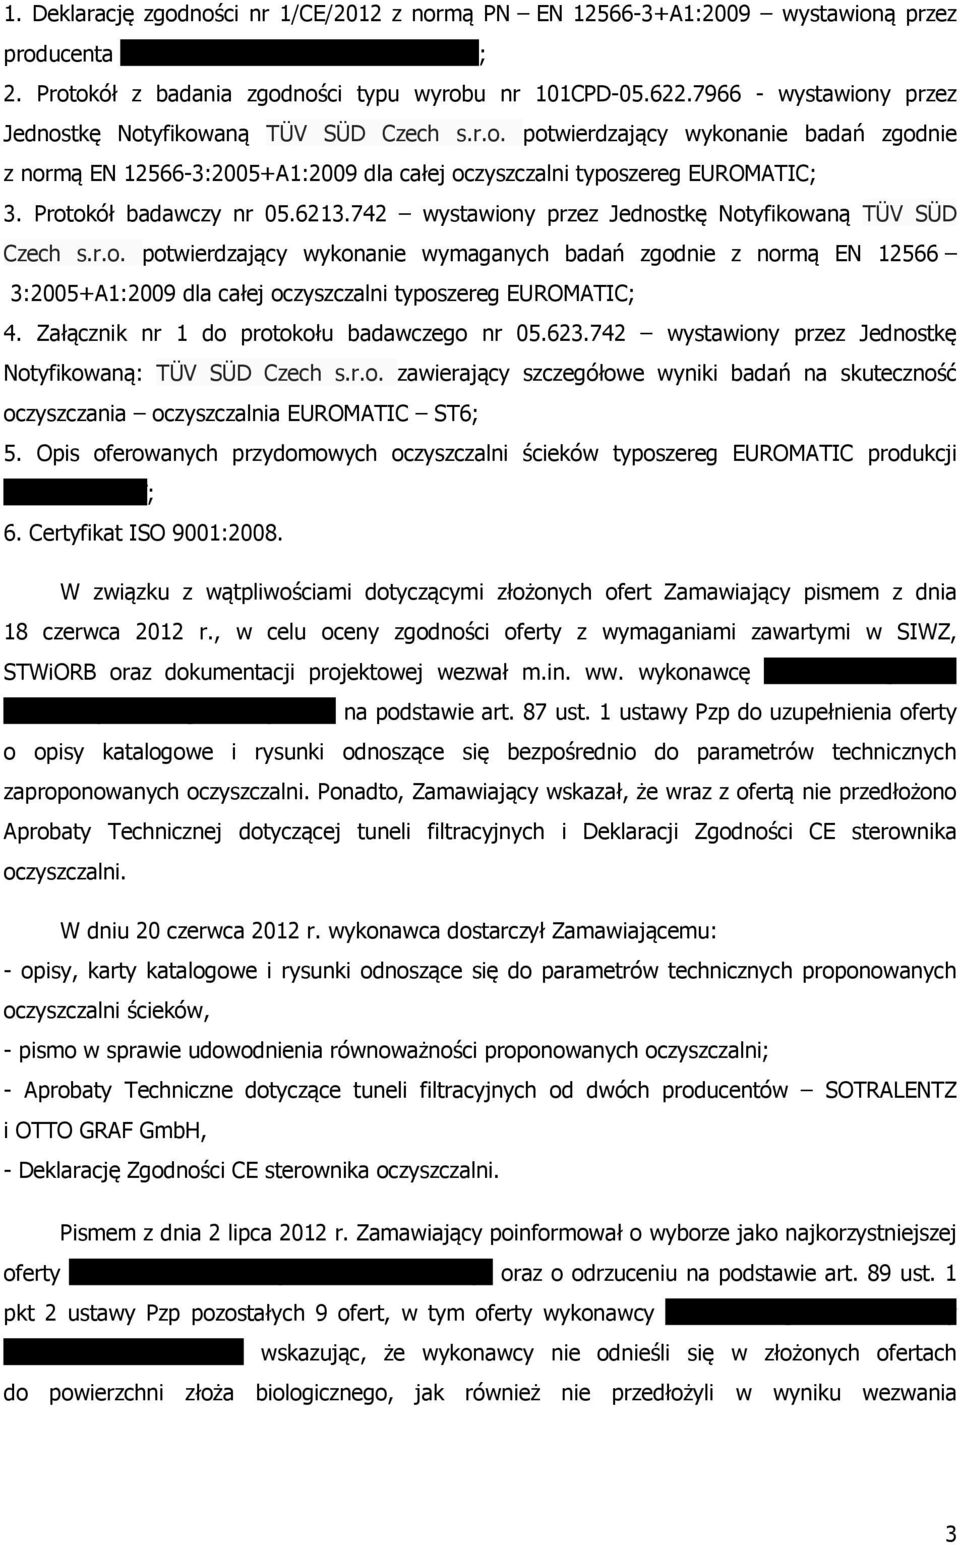 Protokół badawczy nr 05.6213.742 wystawiony przez Jednostkę Notyfikowaną TÜV SÜD Czech s.r.o. potwierdzający wykonanie wymaganych badań zgodnie z normą EN 12566 3:2005+A1:2009 dla całej oczyszczalni typoszereg EUROMATIC; 4.